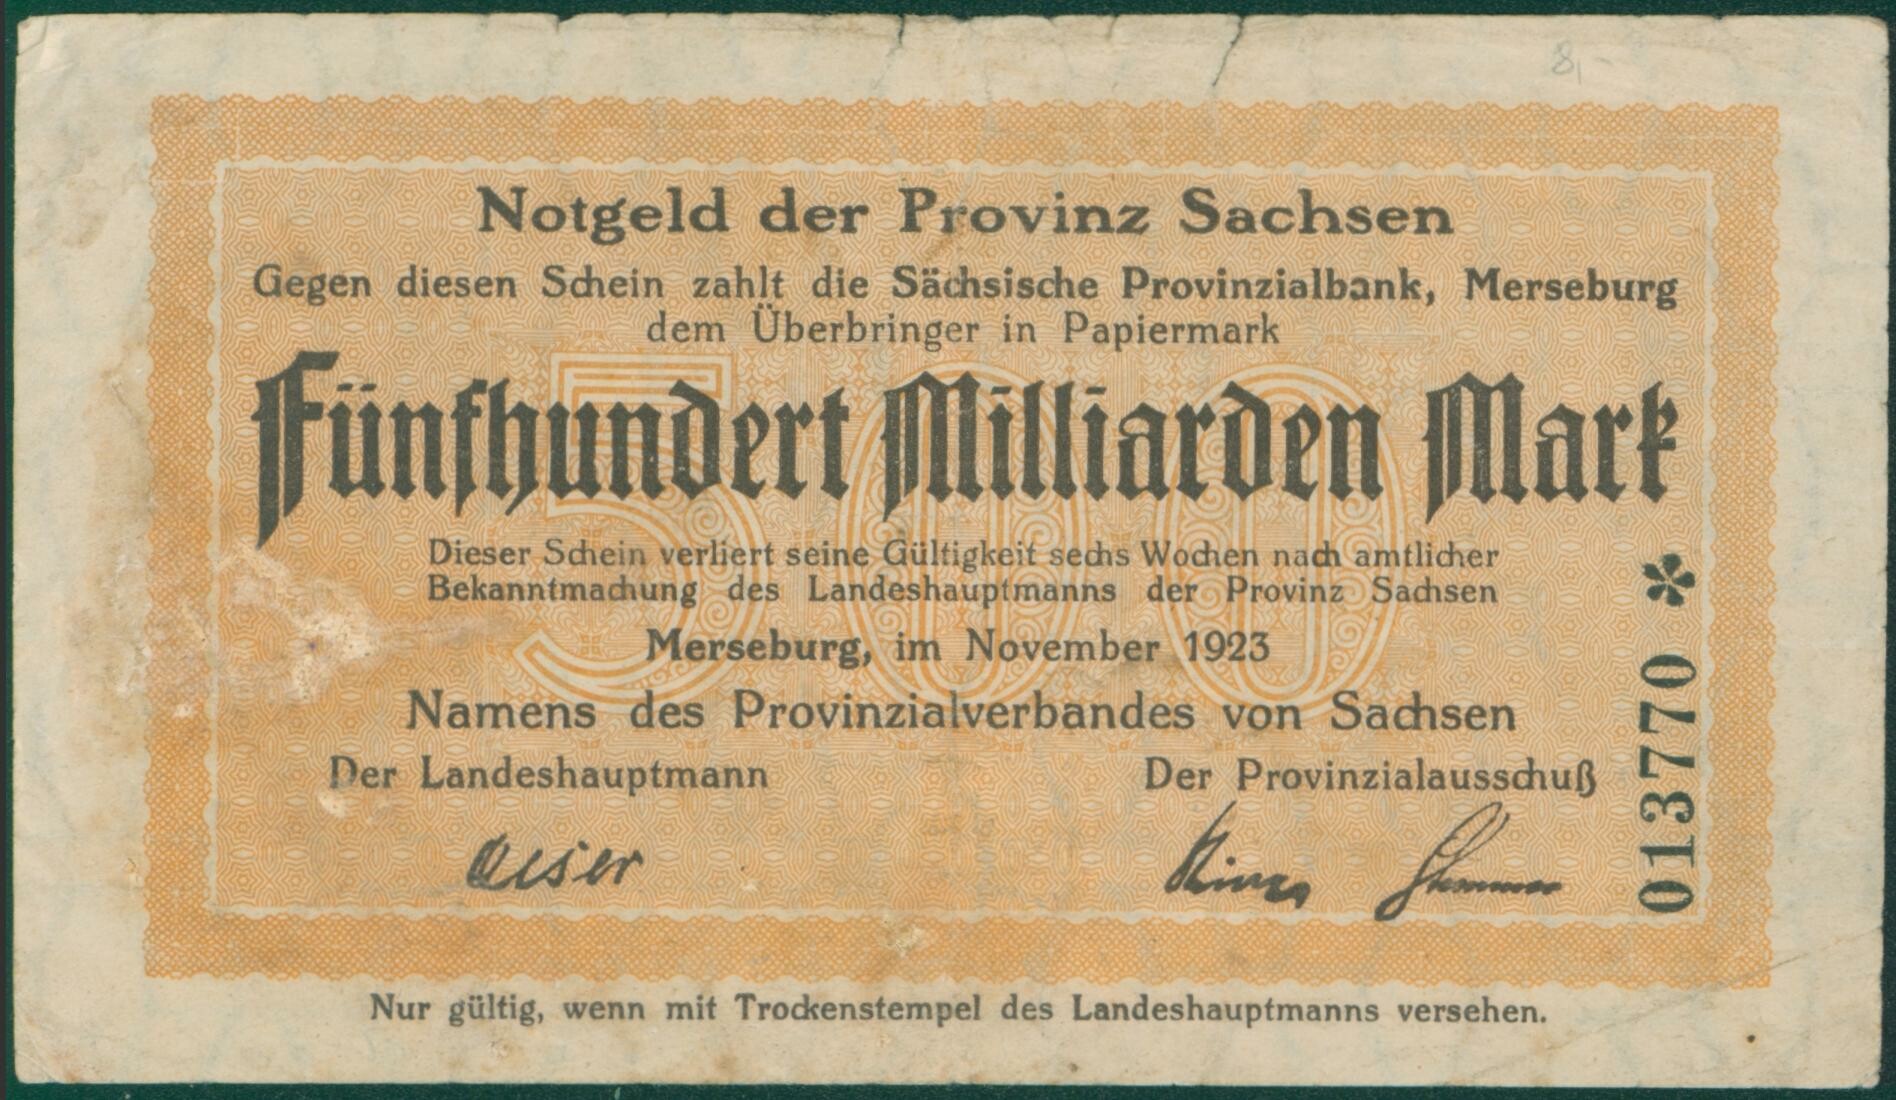 Notgeldschein der Provinz Sachsen "Fünfhundert Milliarden Mark", No. 013770 (Kulturhistorisches Museum Schloss Merseburg CC BY-NC-SA)